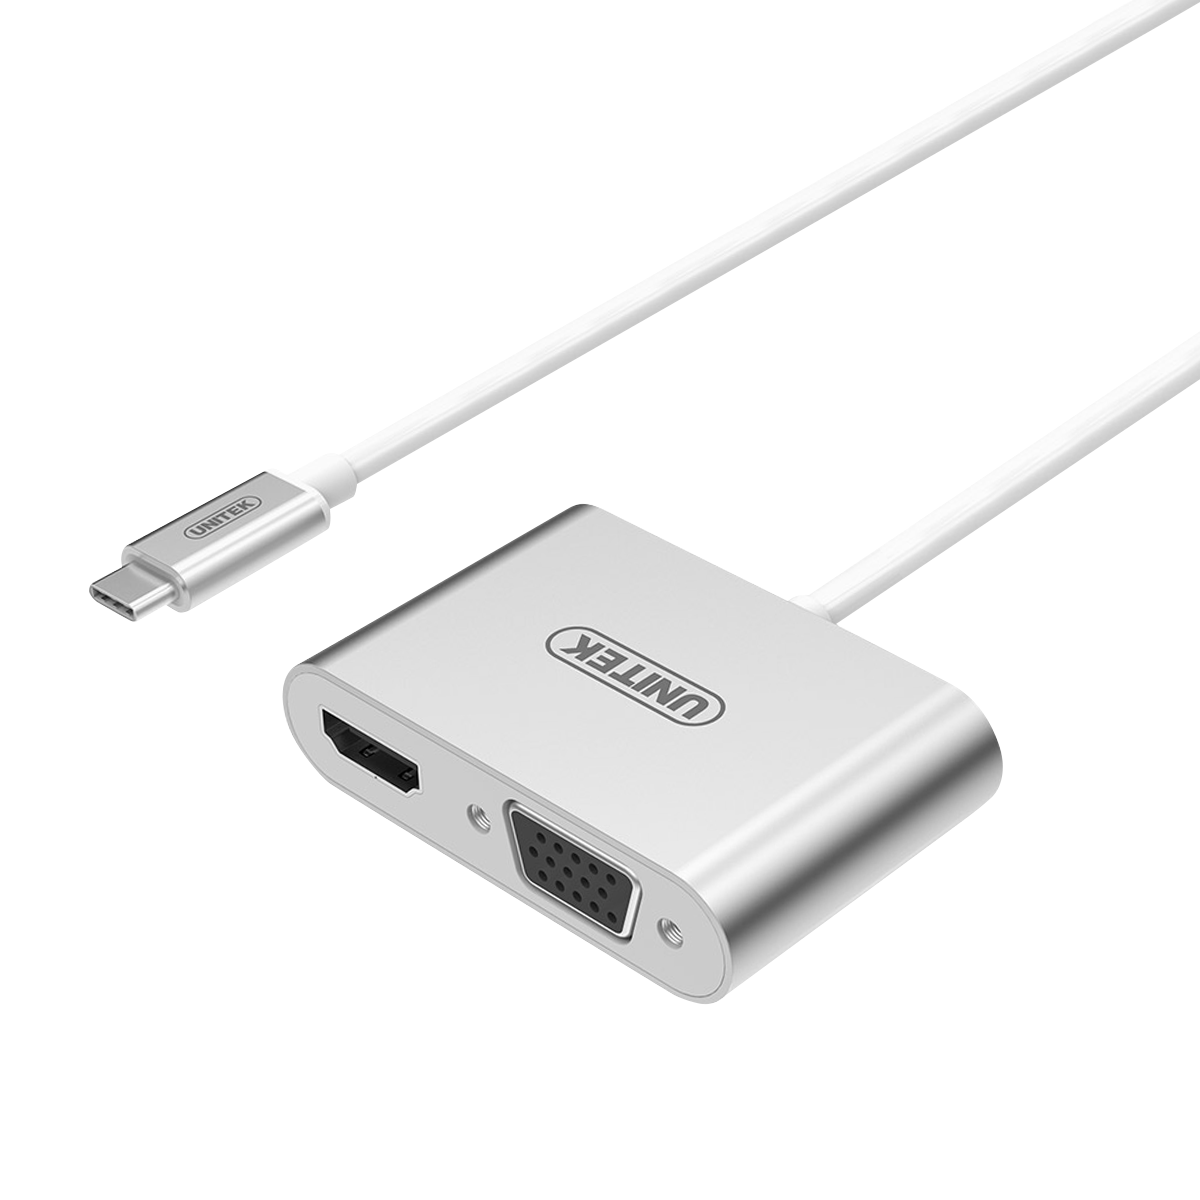 CÁP CHUYỂN ĐỔI UNITEK USB TYPE C USB 3.1 SANG HDMI + VGA VS100